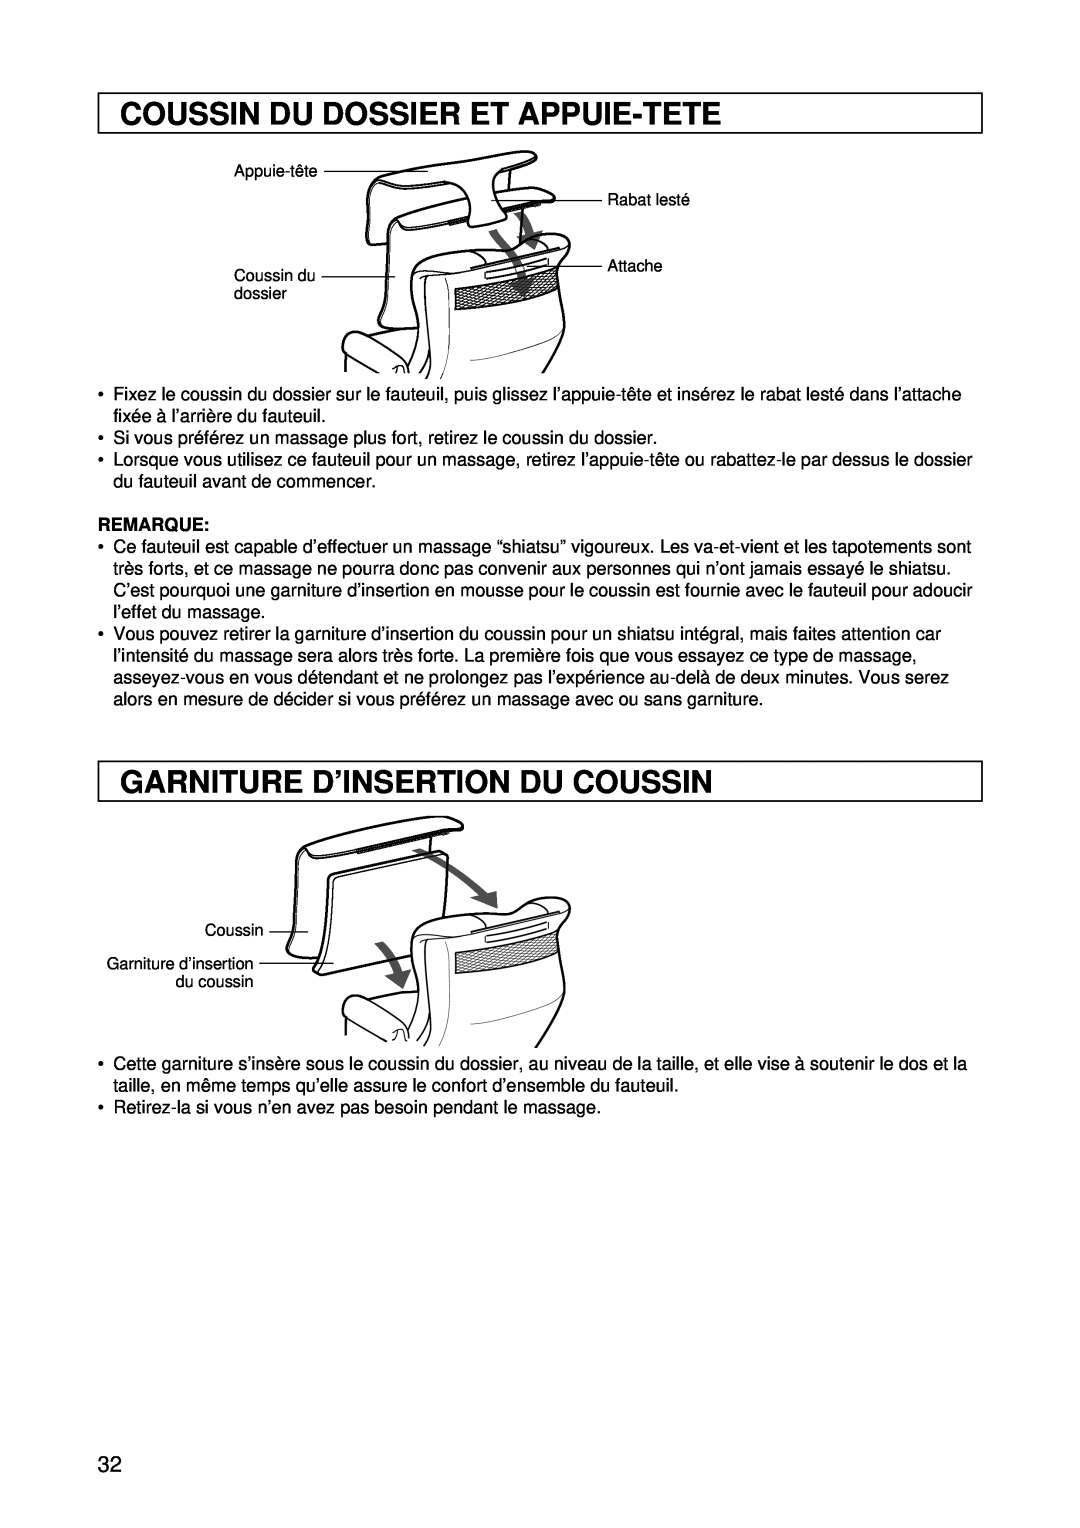 Panasonic EP1015 Coussin Du Dossier Et Appuie-Tete, Garniture D’Insertion Du Coussin, Appuie-tête, Coussin du dossier 